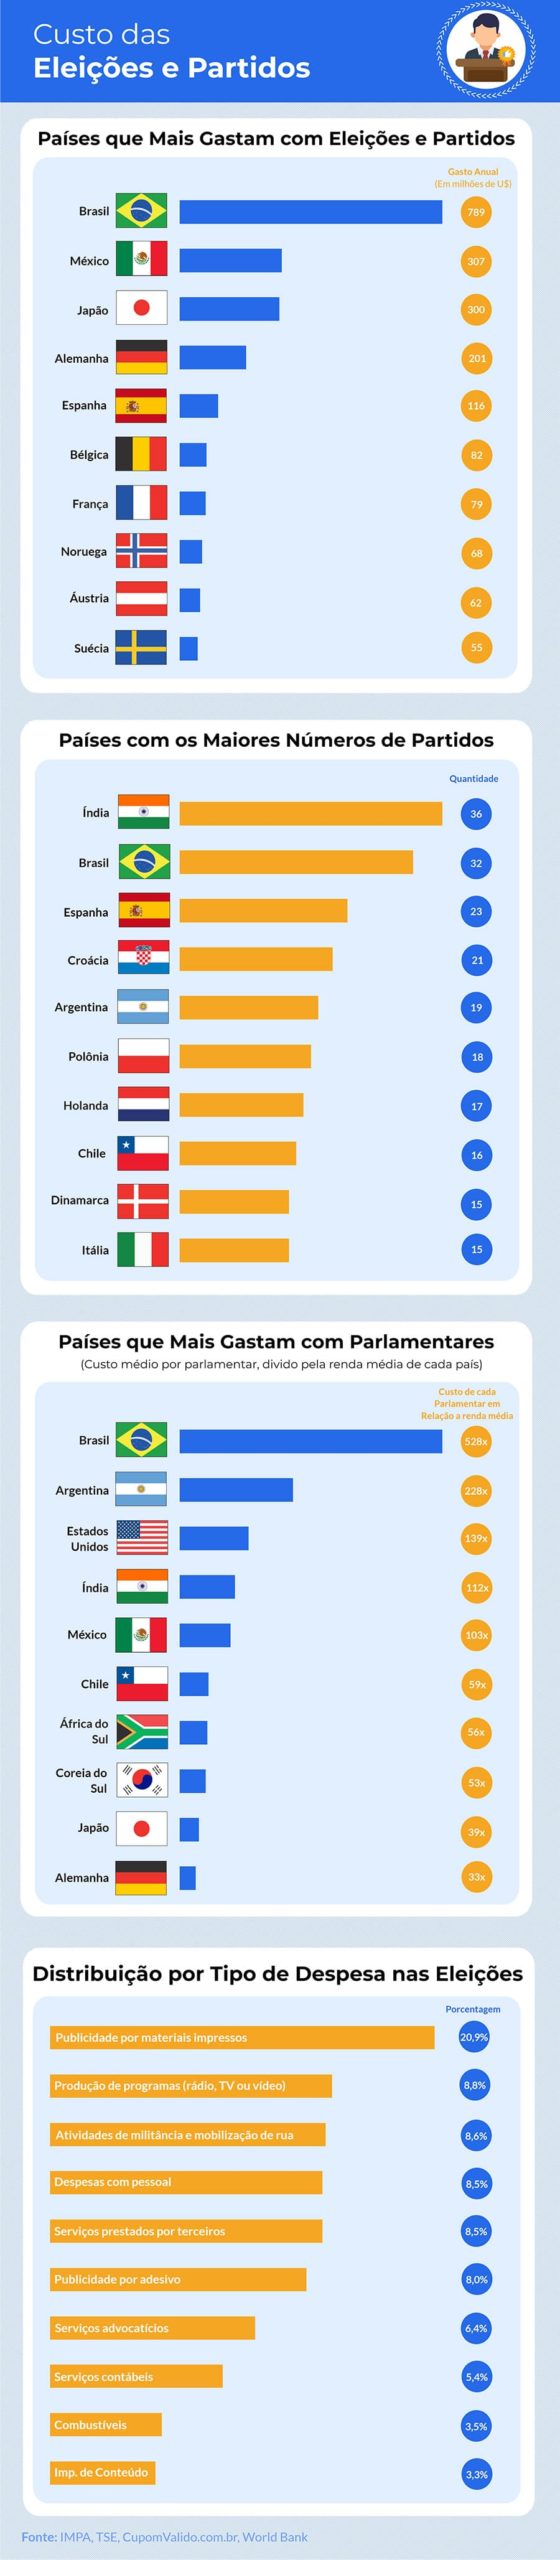 Brasil é o país que mais gasta com eleições e partidos